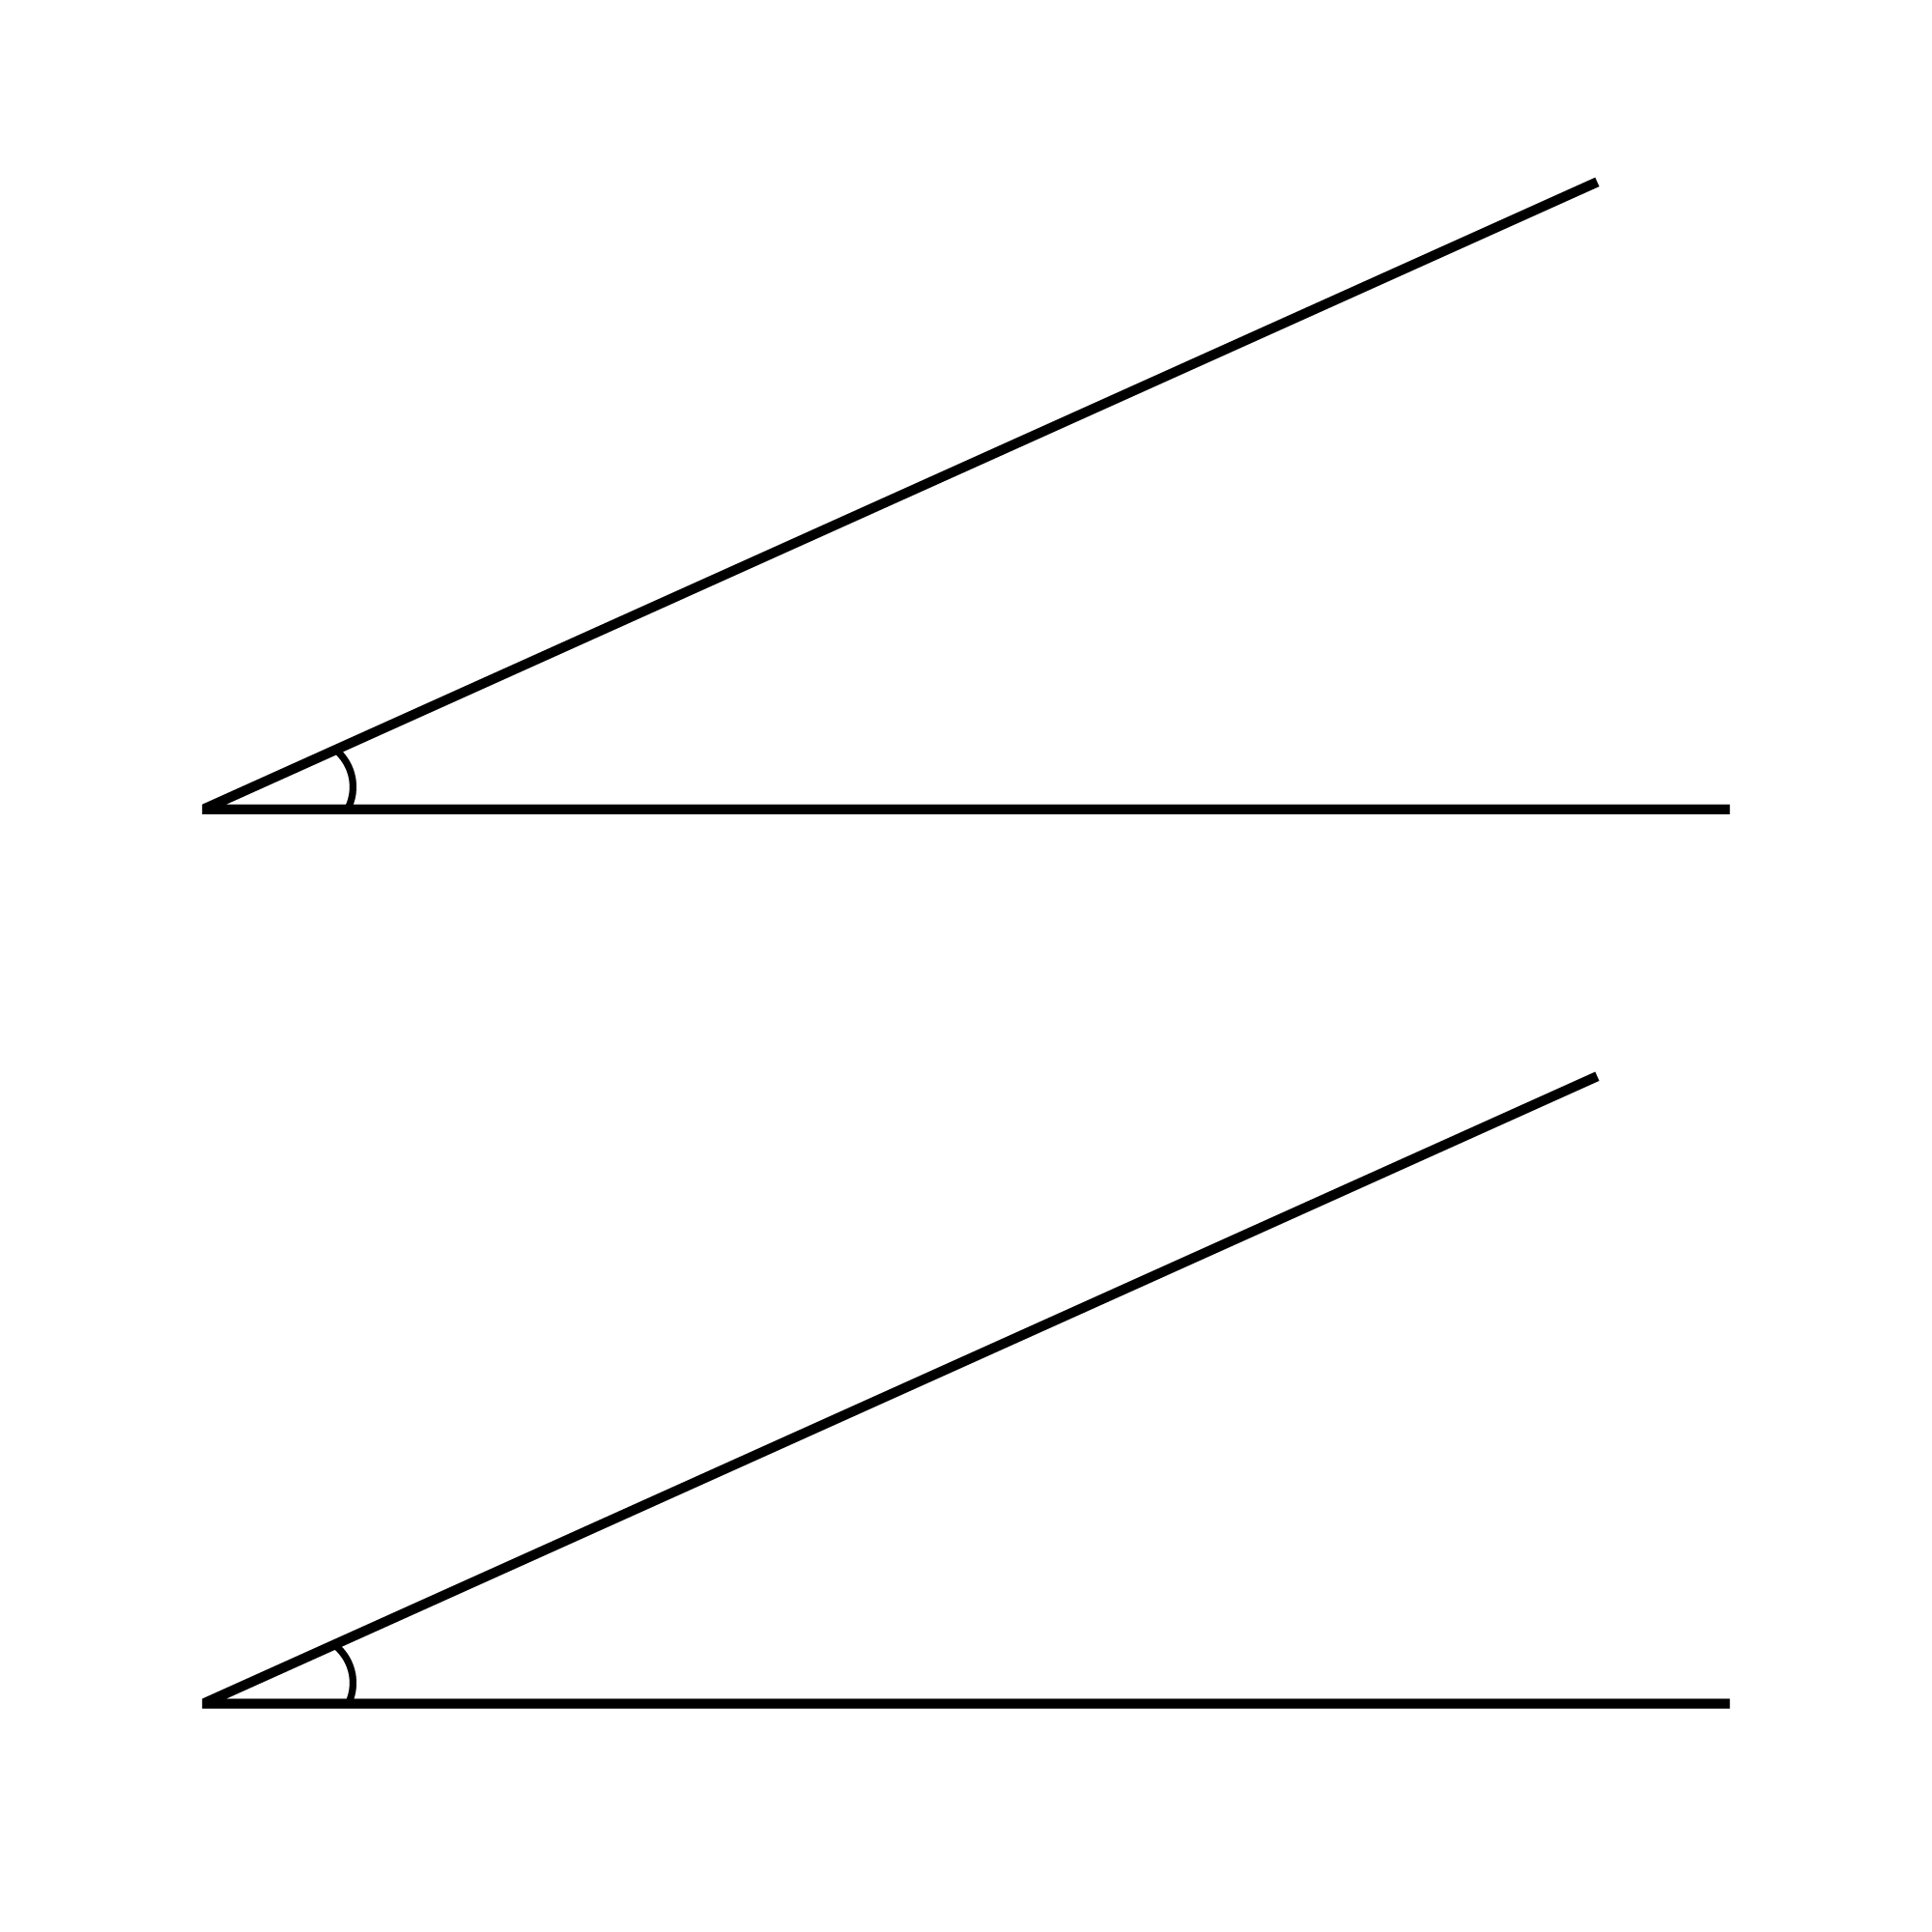 Equal angles